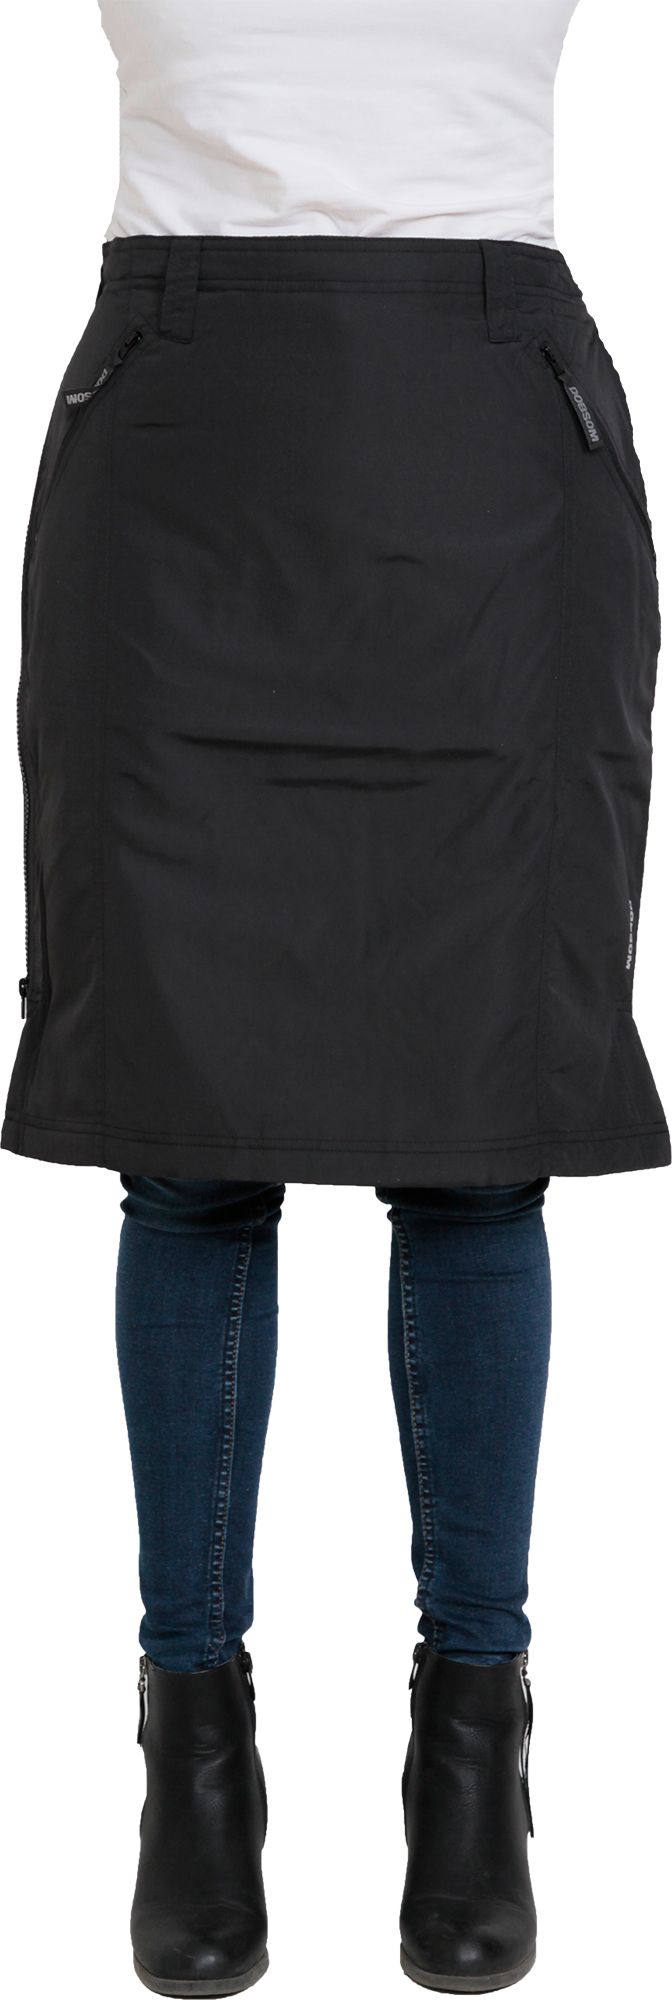 Dobsom Women's Comfort Thermo Skirt Short Black